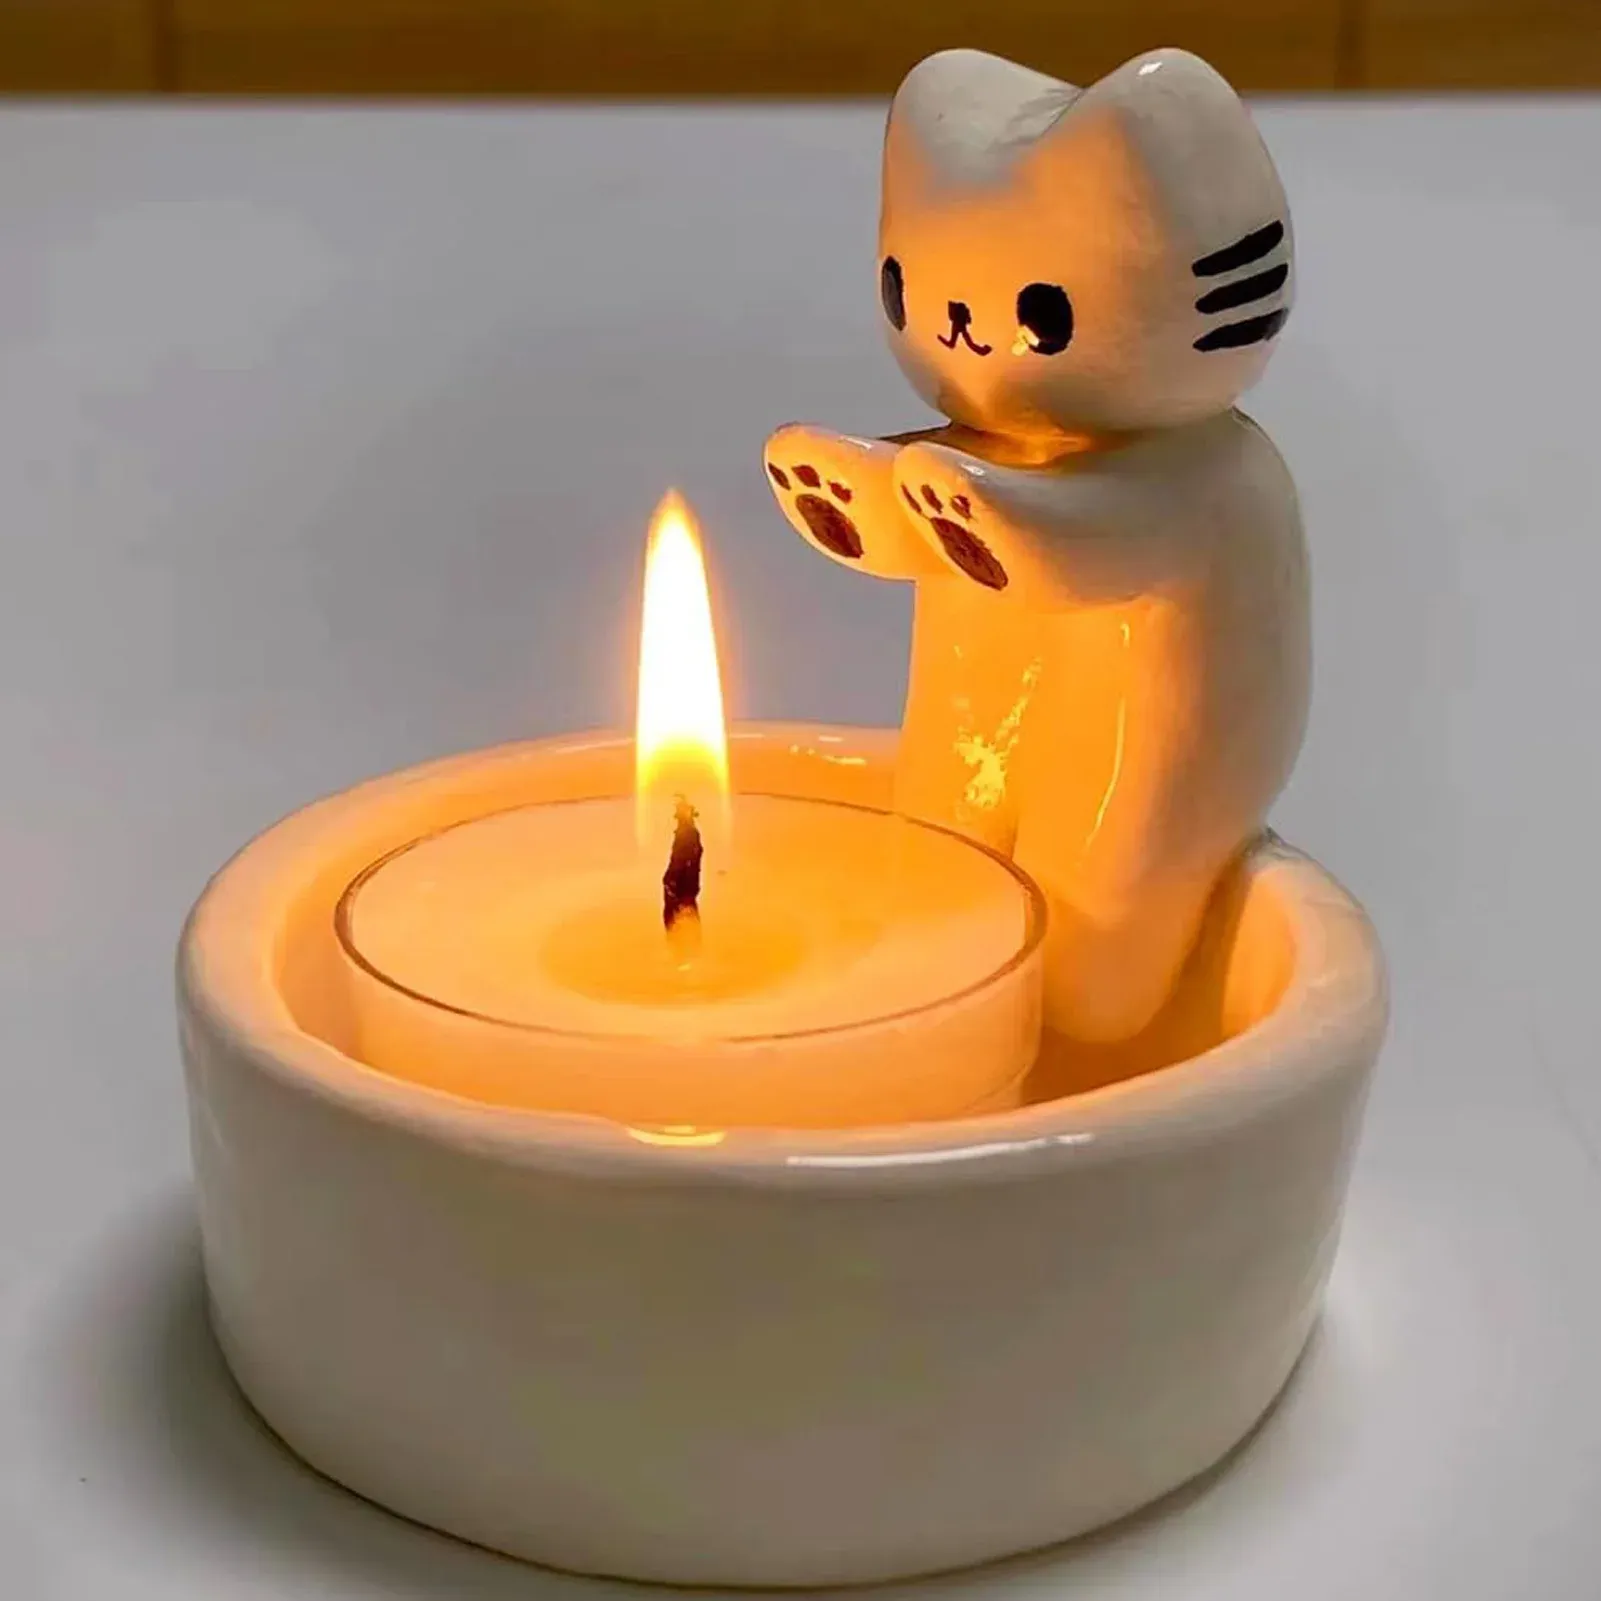 Houders kitten kaarsenhouder schattige kat kandelaar creatieve aromatherapie kaarsenhouder duurzame hoge tempe cartoon kandelaardecoratie